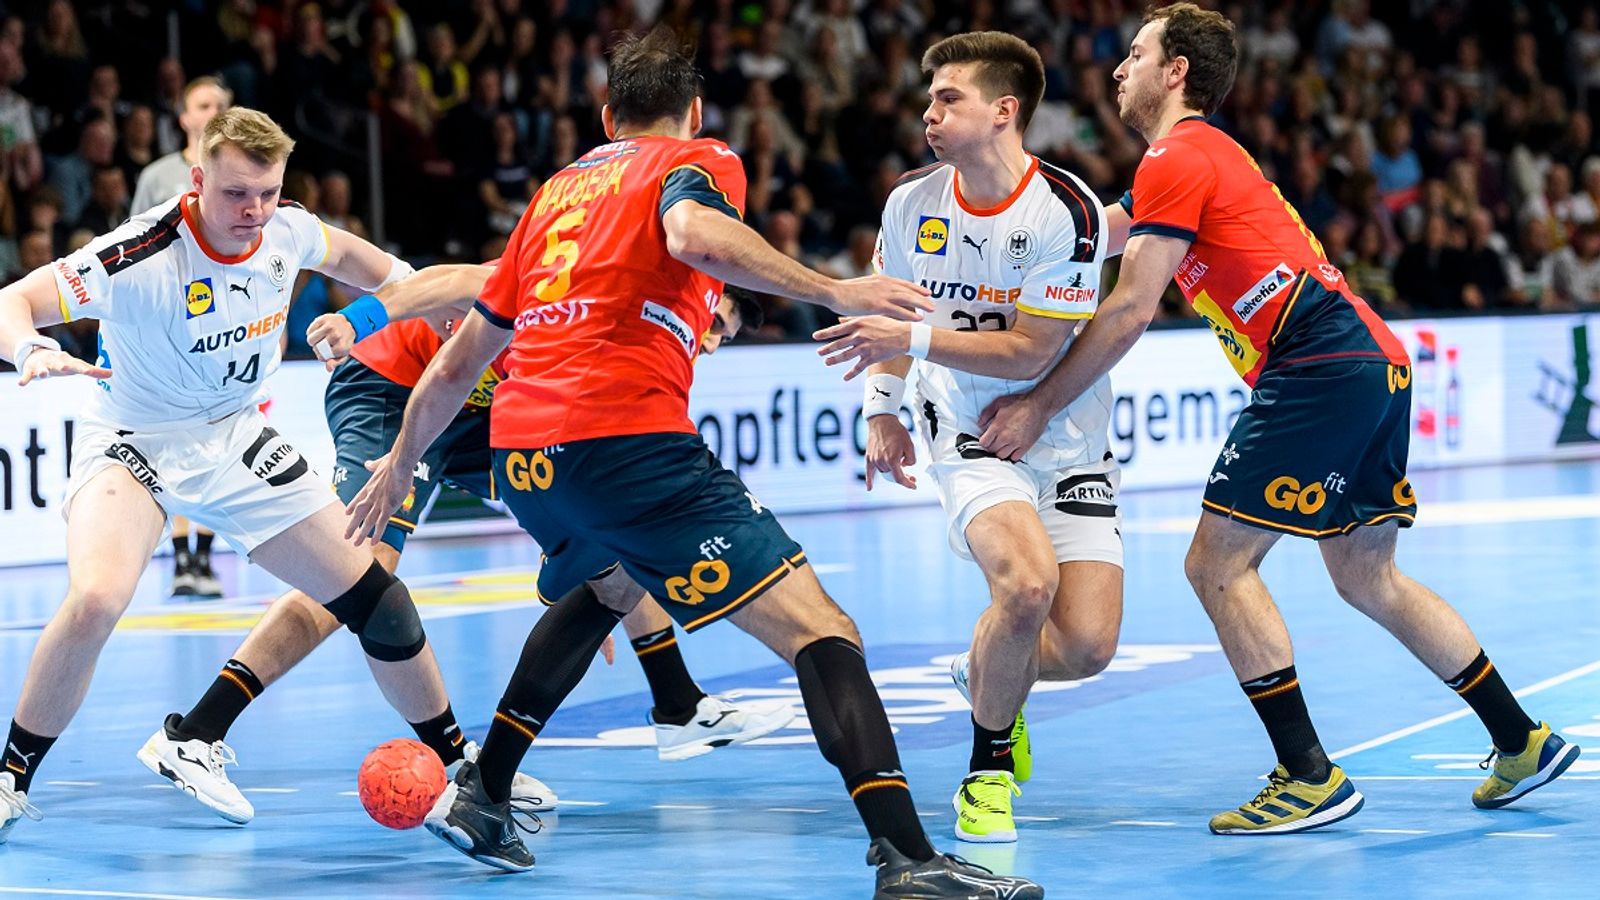 Handball-EM Die wichtigsten Fragen im Überblick